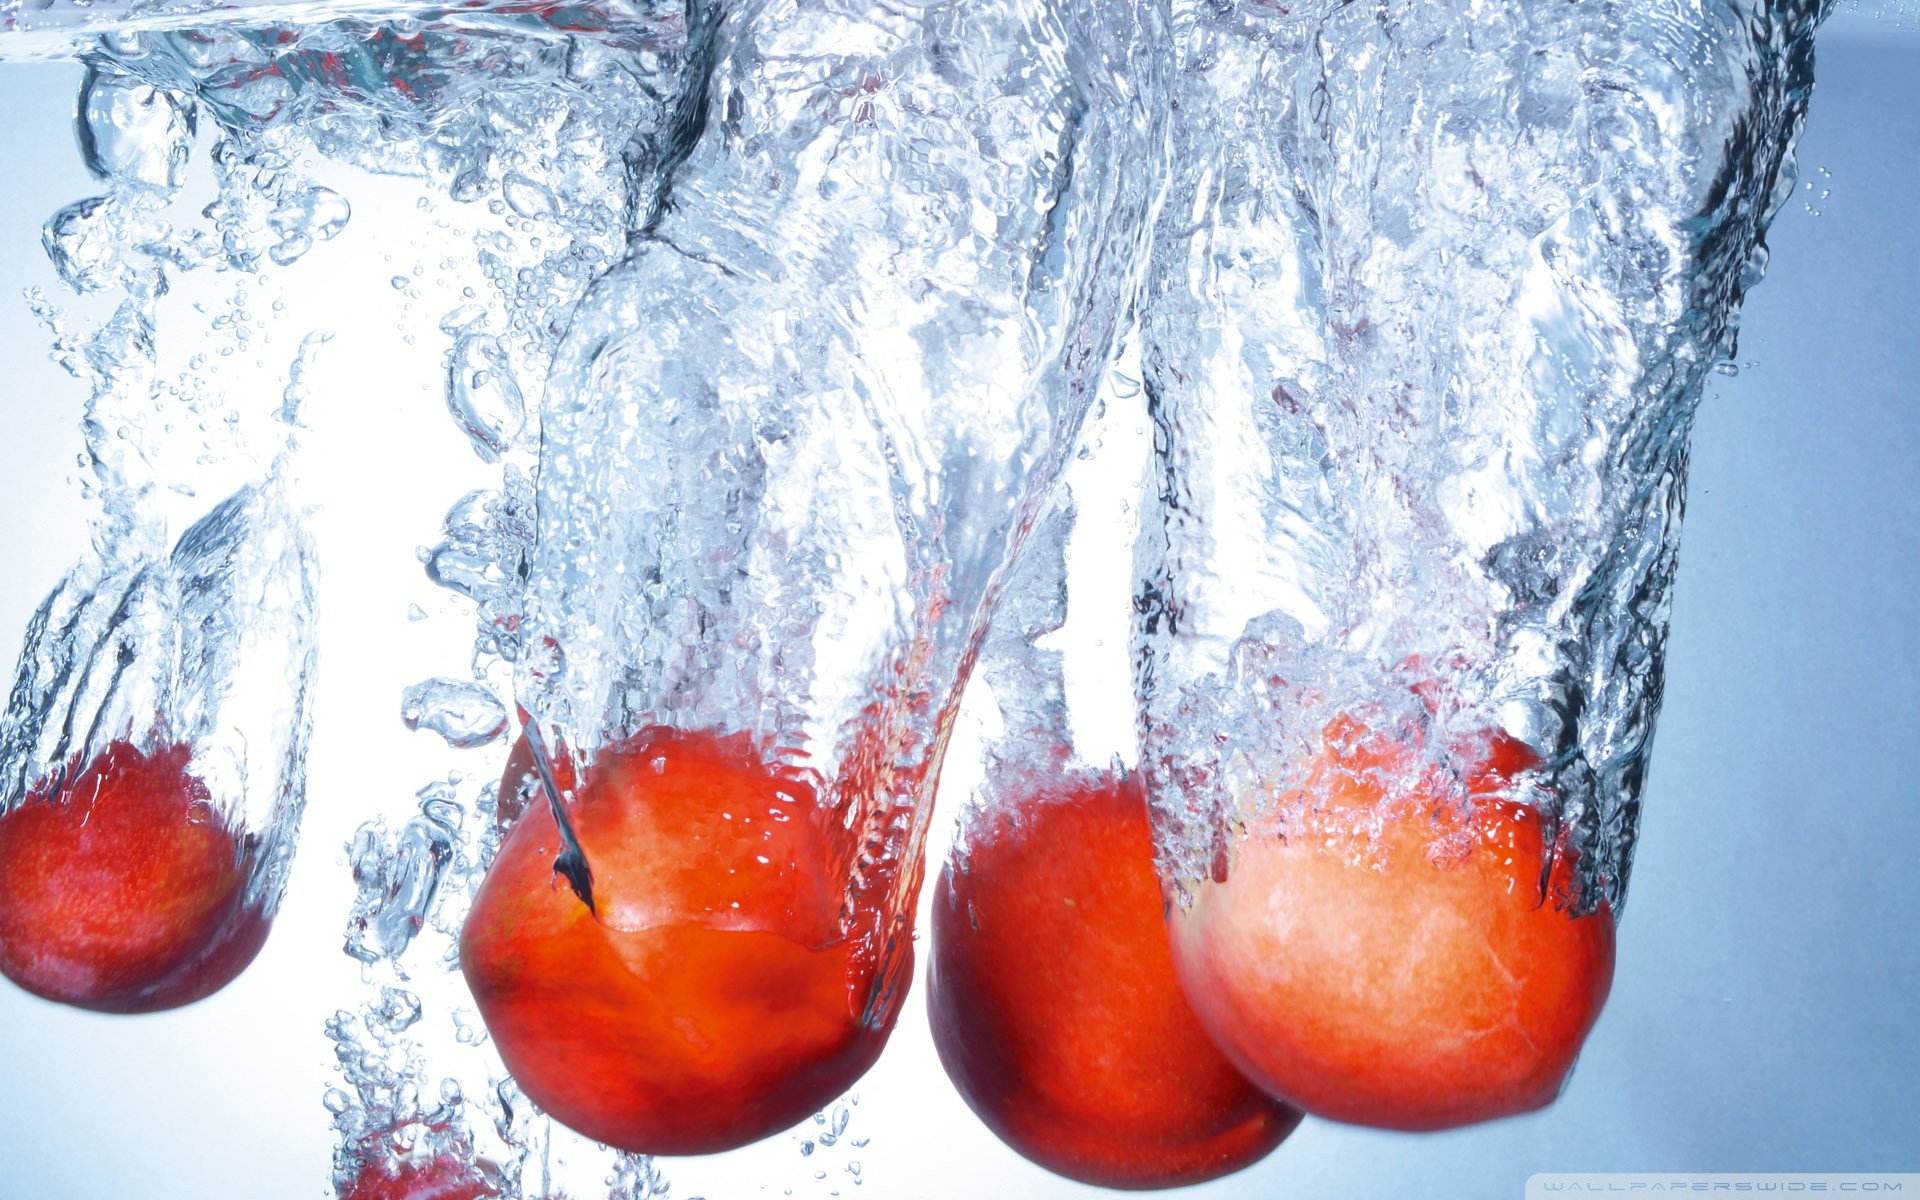 General 1920x1200 mangos water fruit splashes food closeup watermarked